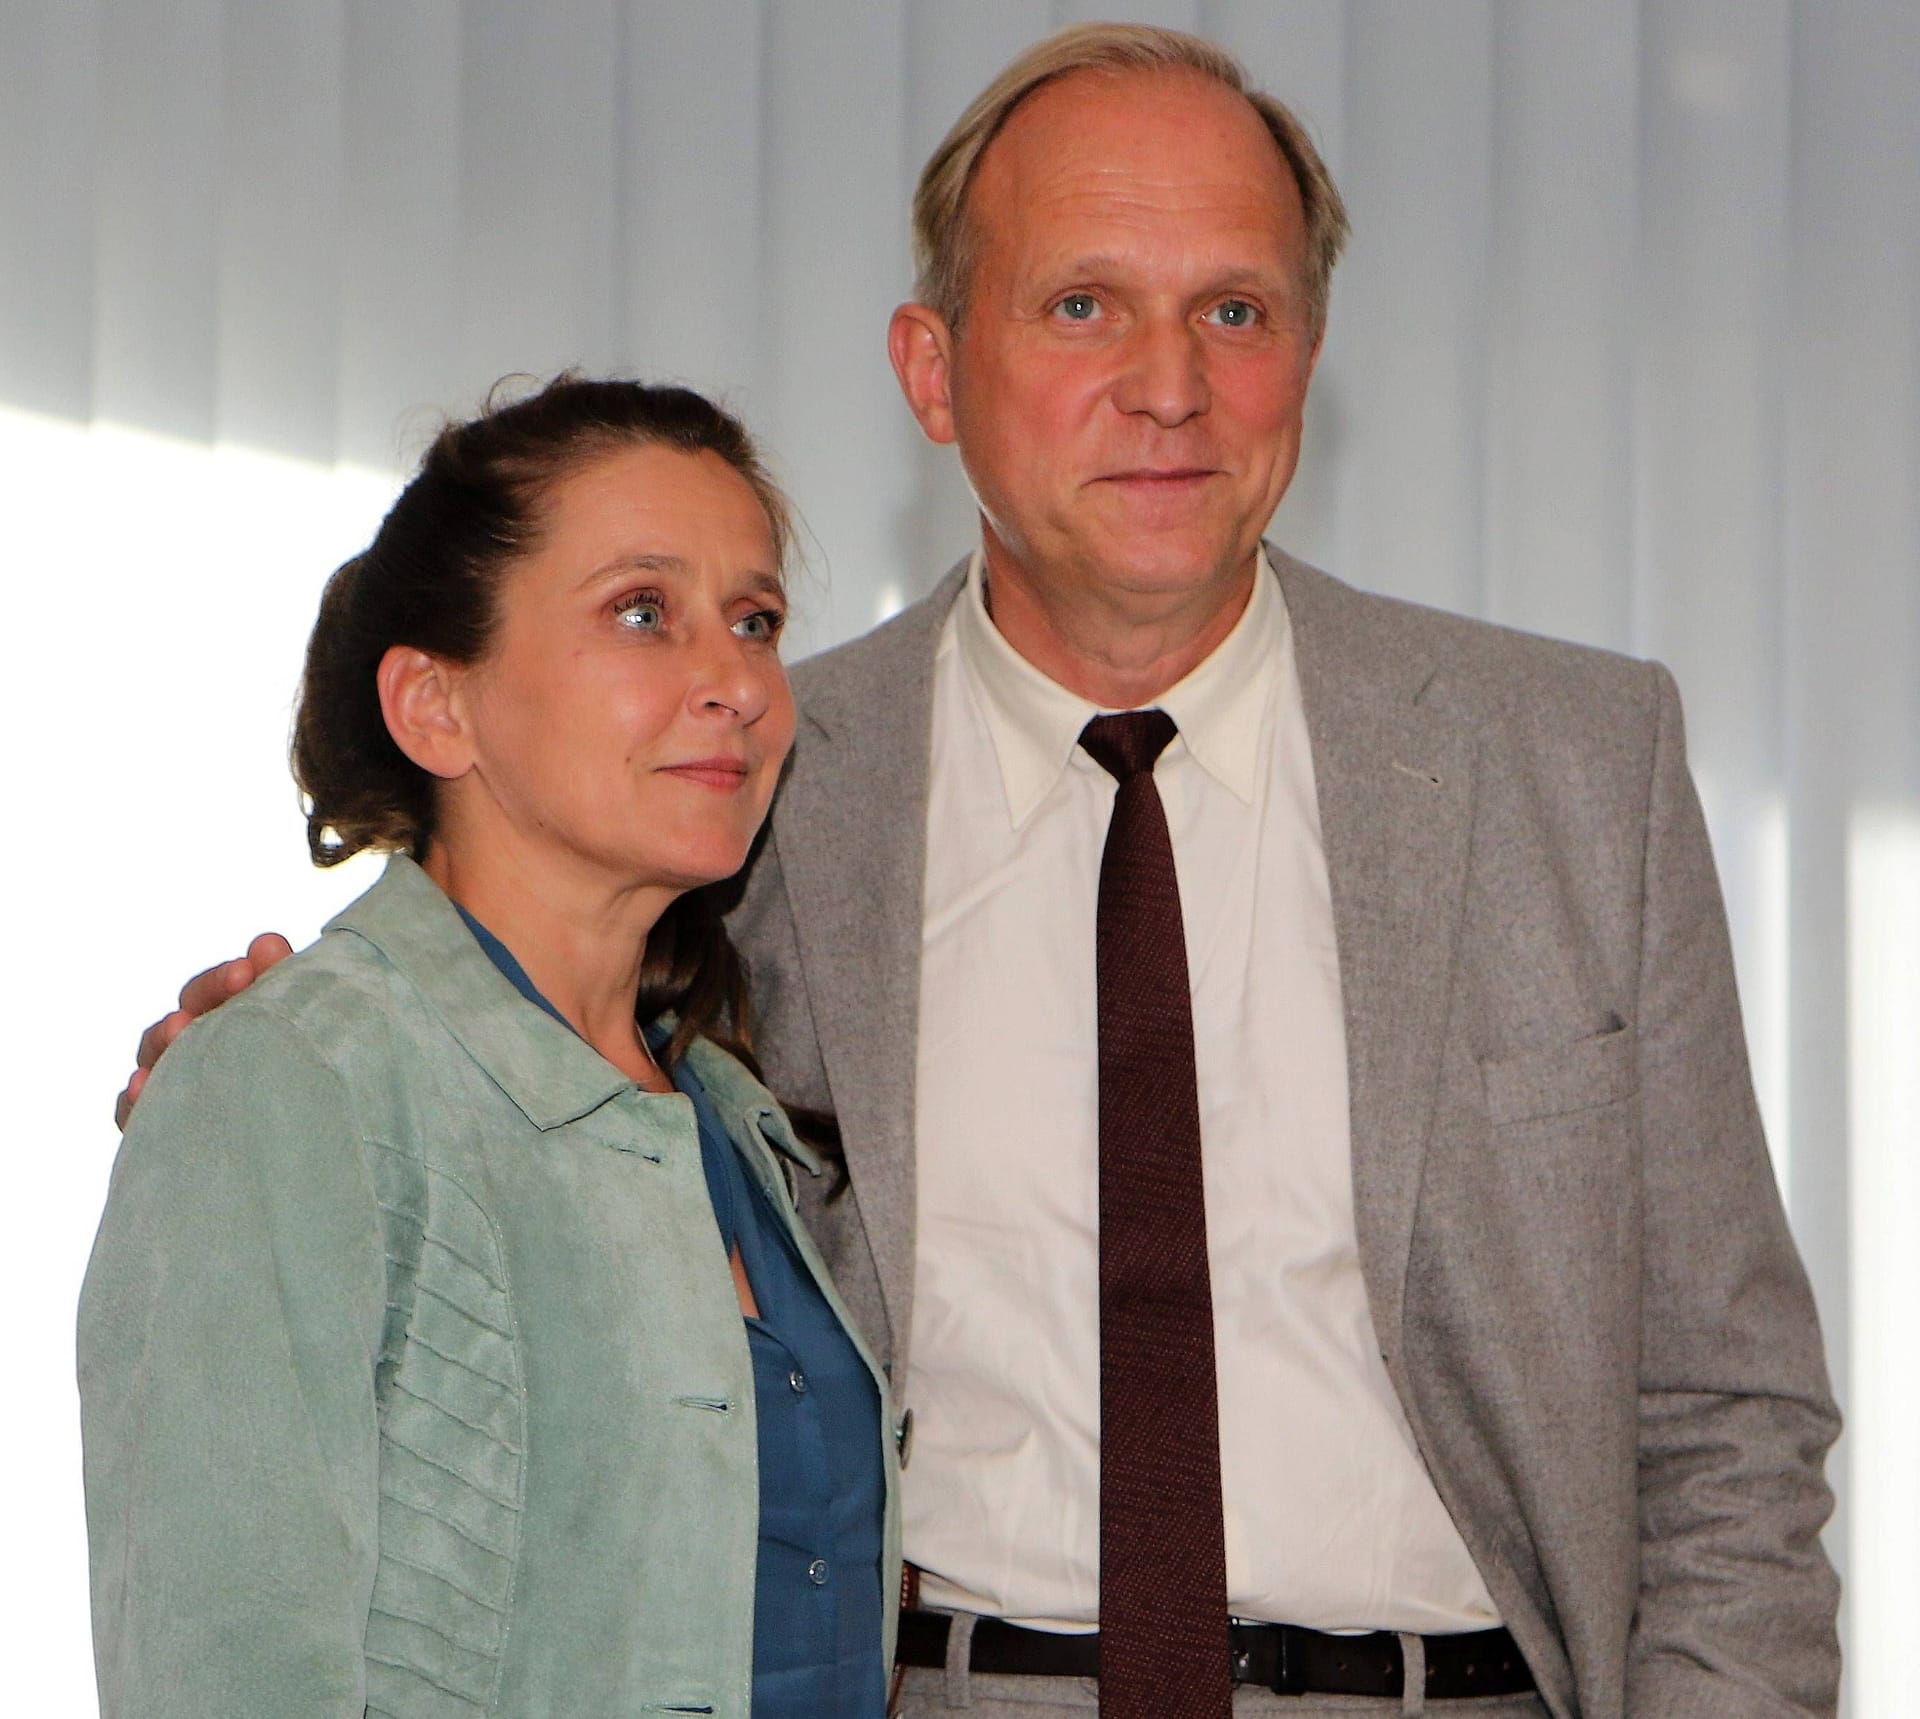 Barbara Philipp und Ulrich Tukur spielen seit 2010 zusammen im "Tatort".